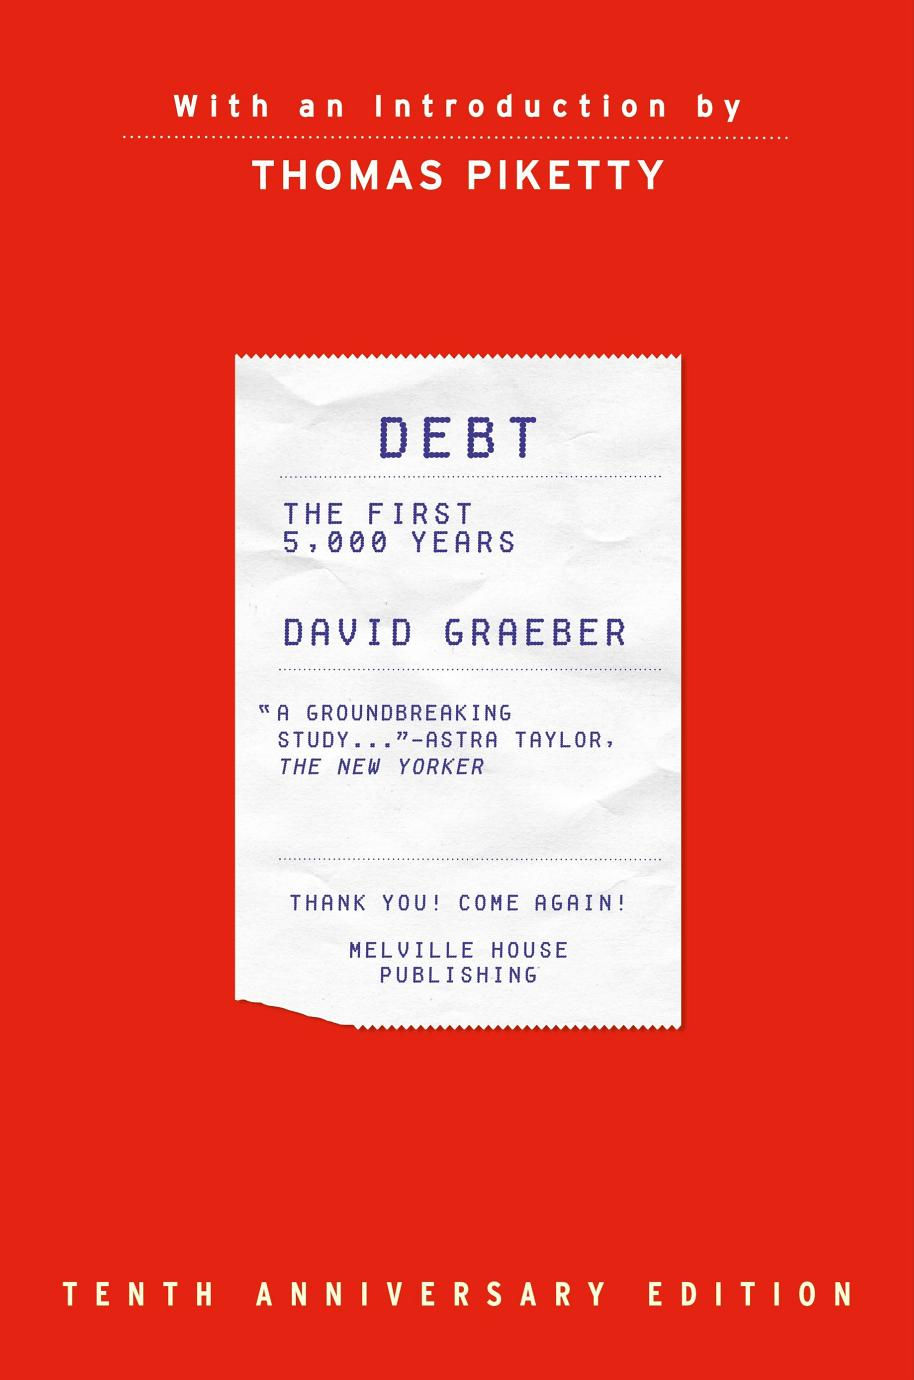 d-g-david-graeber-debt-1.png